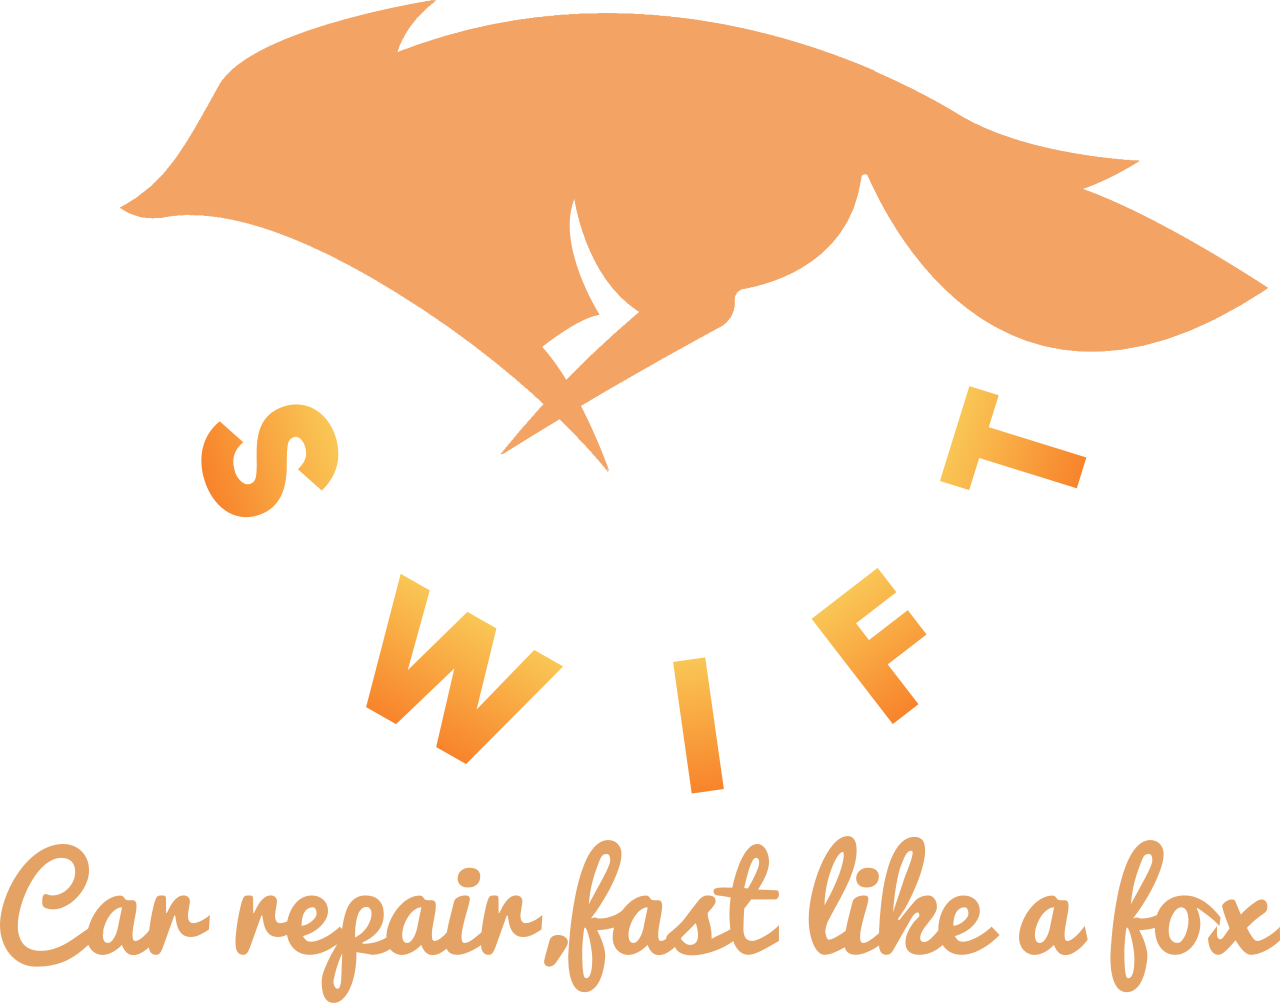 Swift's logo